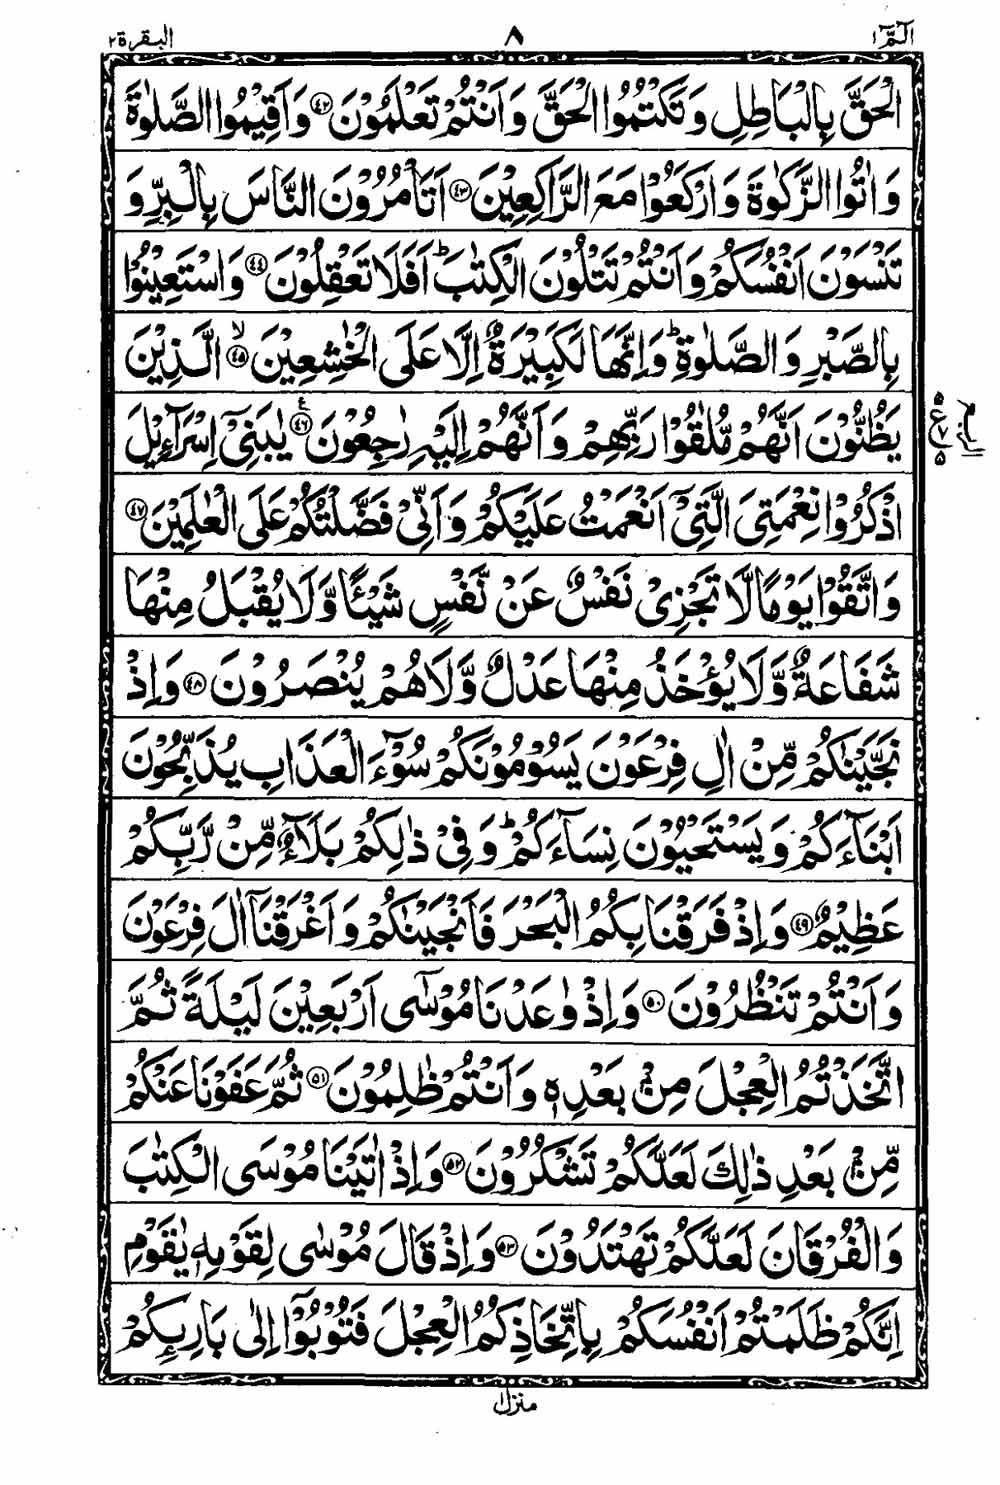 Read 16 Lines Al Quran Taj Company Part 1 Page No 9, Practice Quran